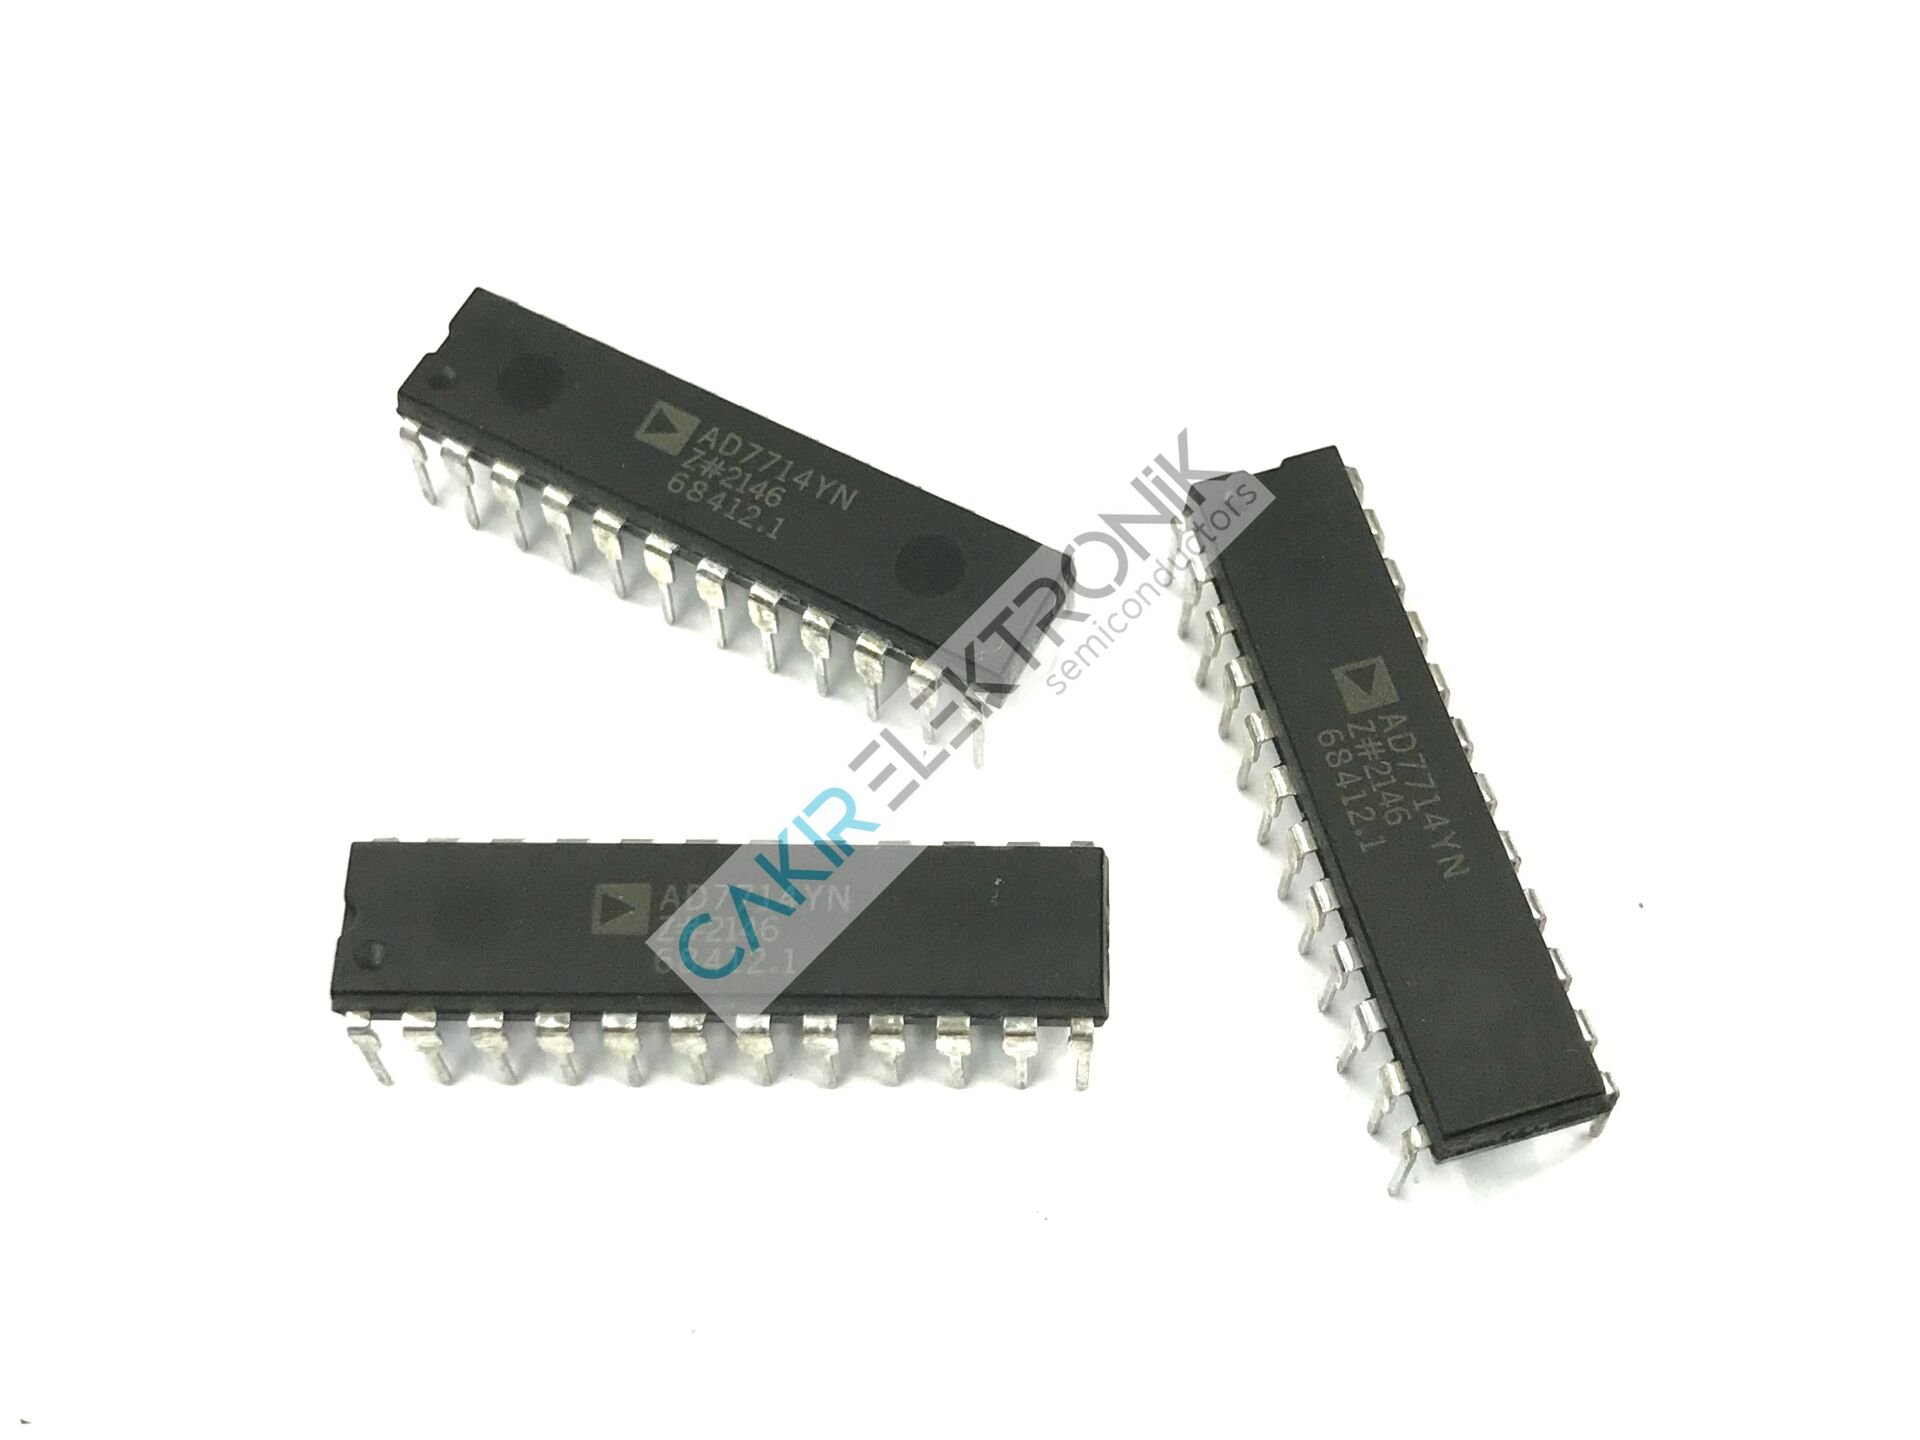 AD7714YN - AD7714YNZ - AD7714 - 3 V/5 V, CMOS, 500mASignal Conditioning ADC